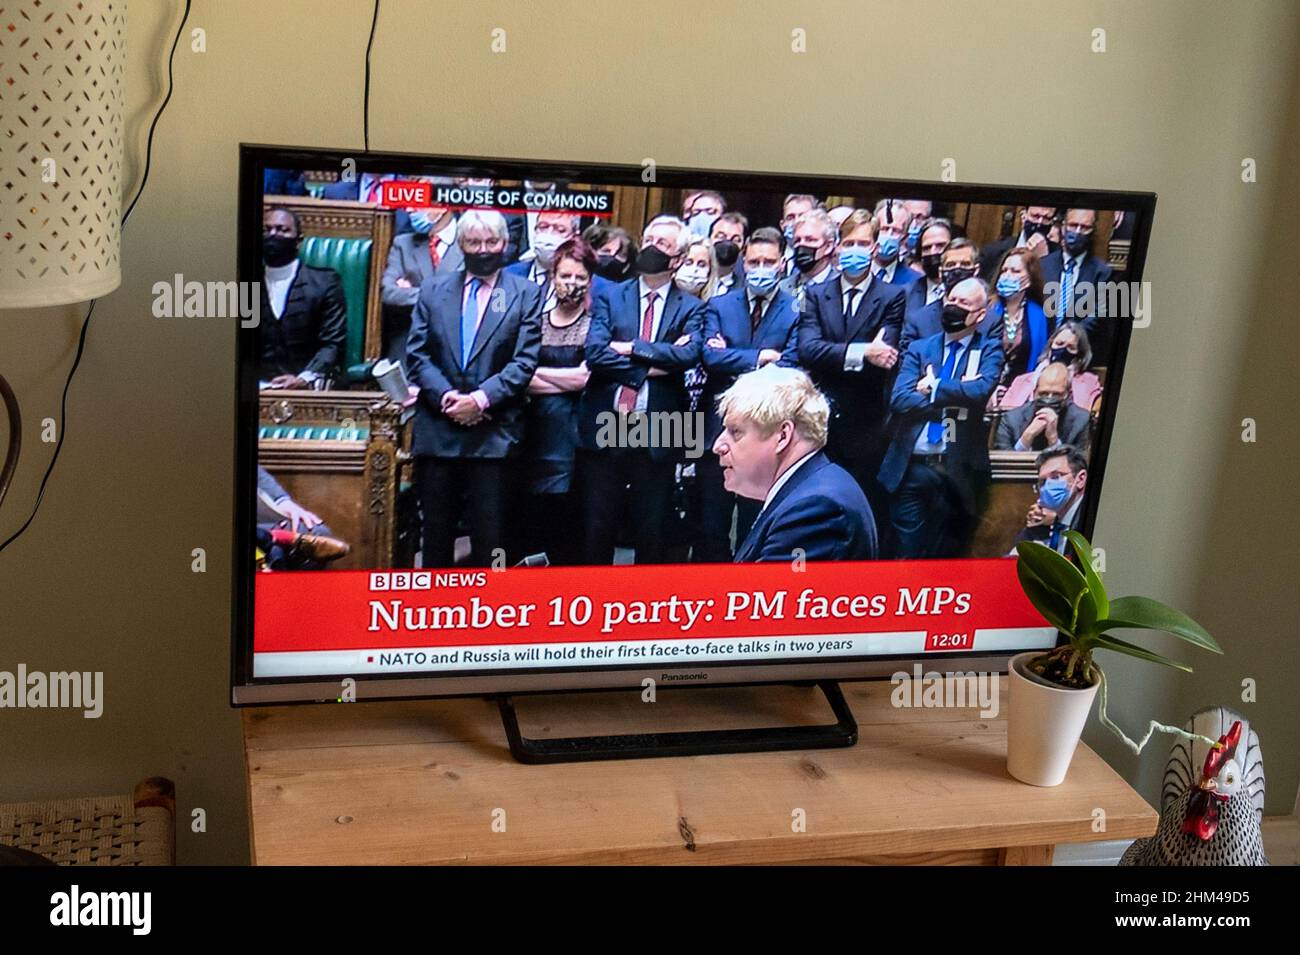 El primer ministro Boris Johnson en las noticias de la BBC disculpándose a los parlamentarios de la Cámara de los Comunes por romper las reglas de Covid con los partidos en 10 Downing Street. Foto de stock